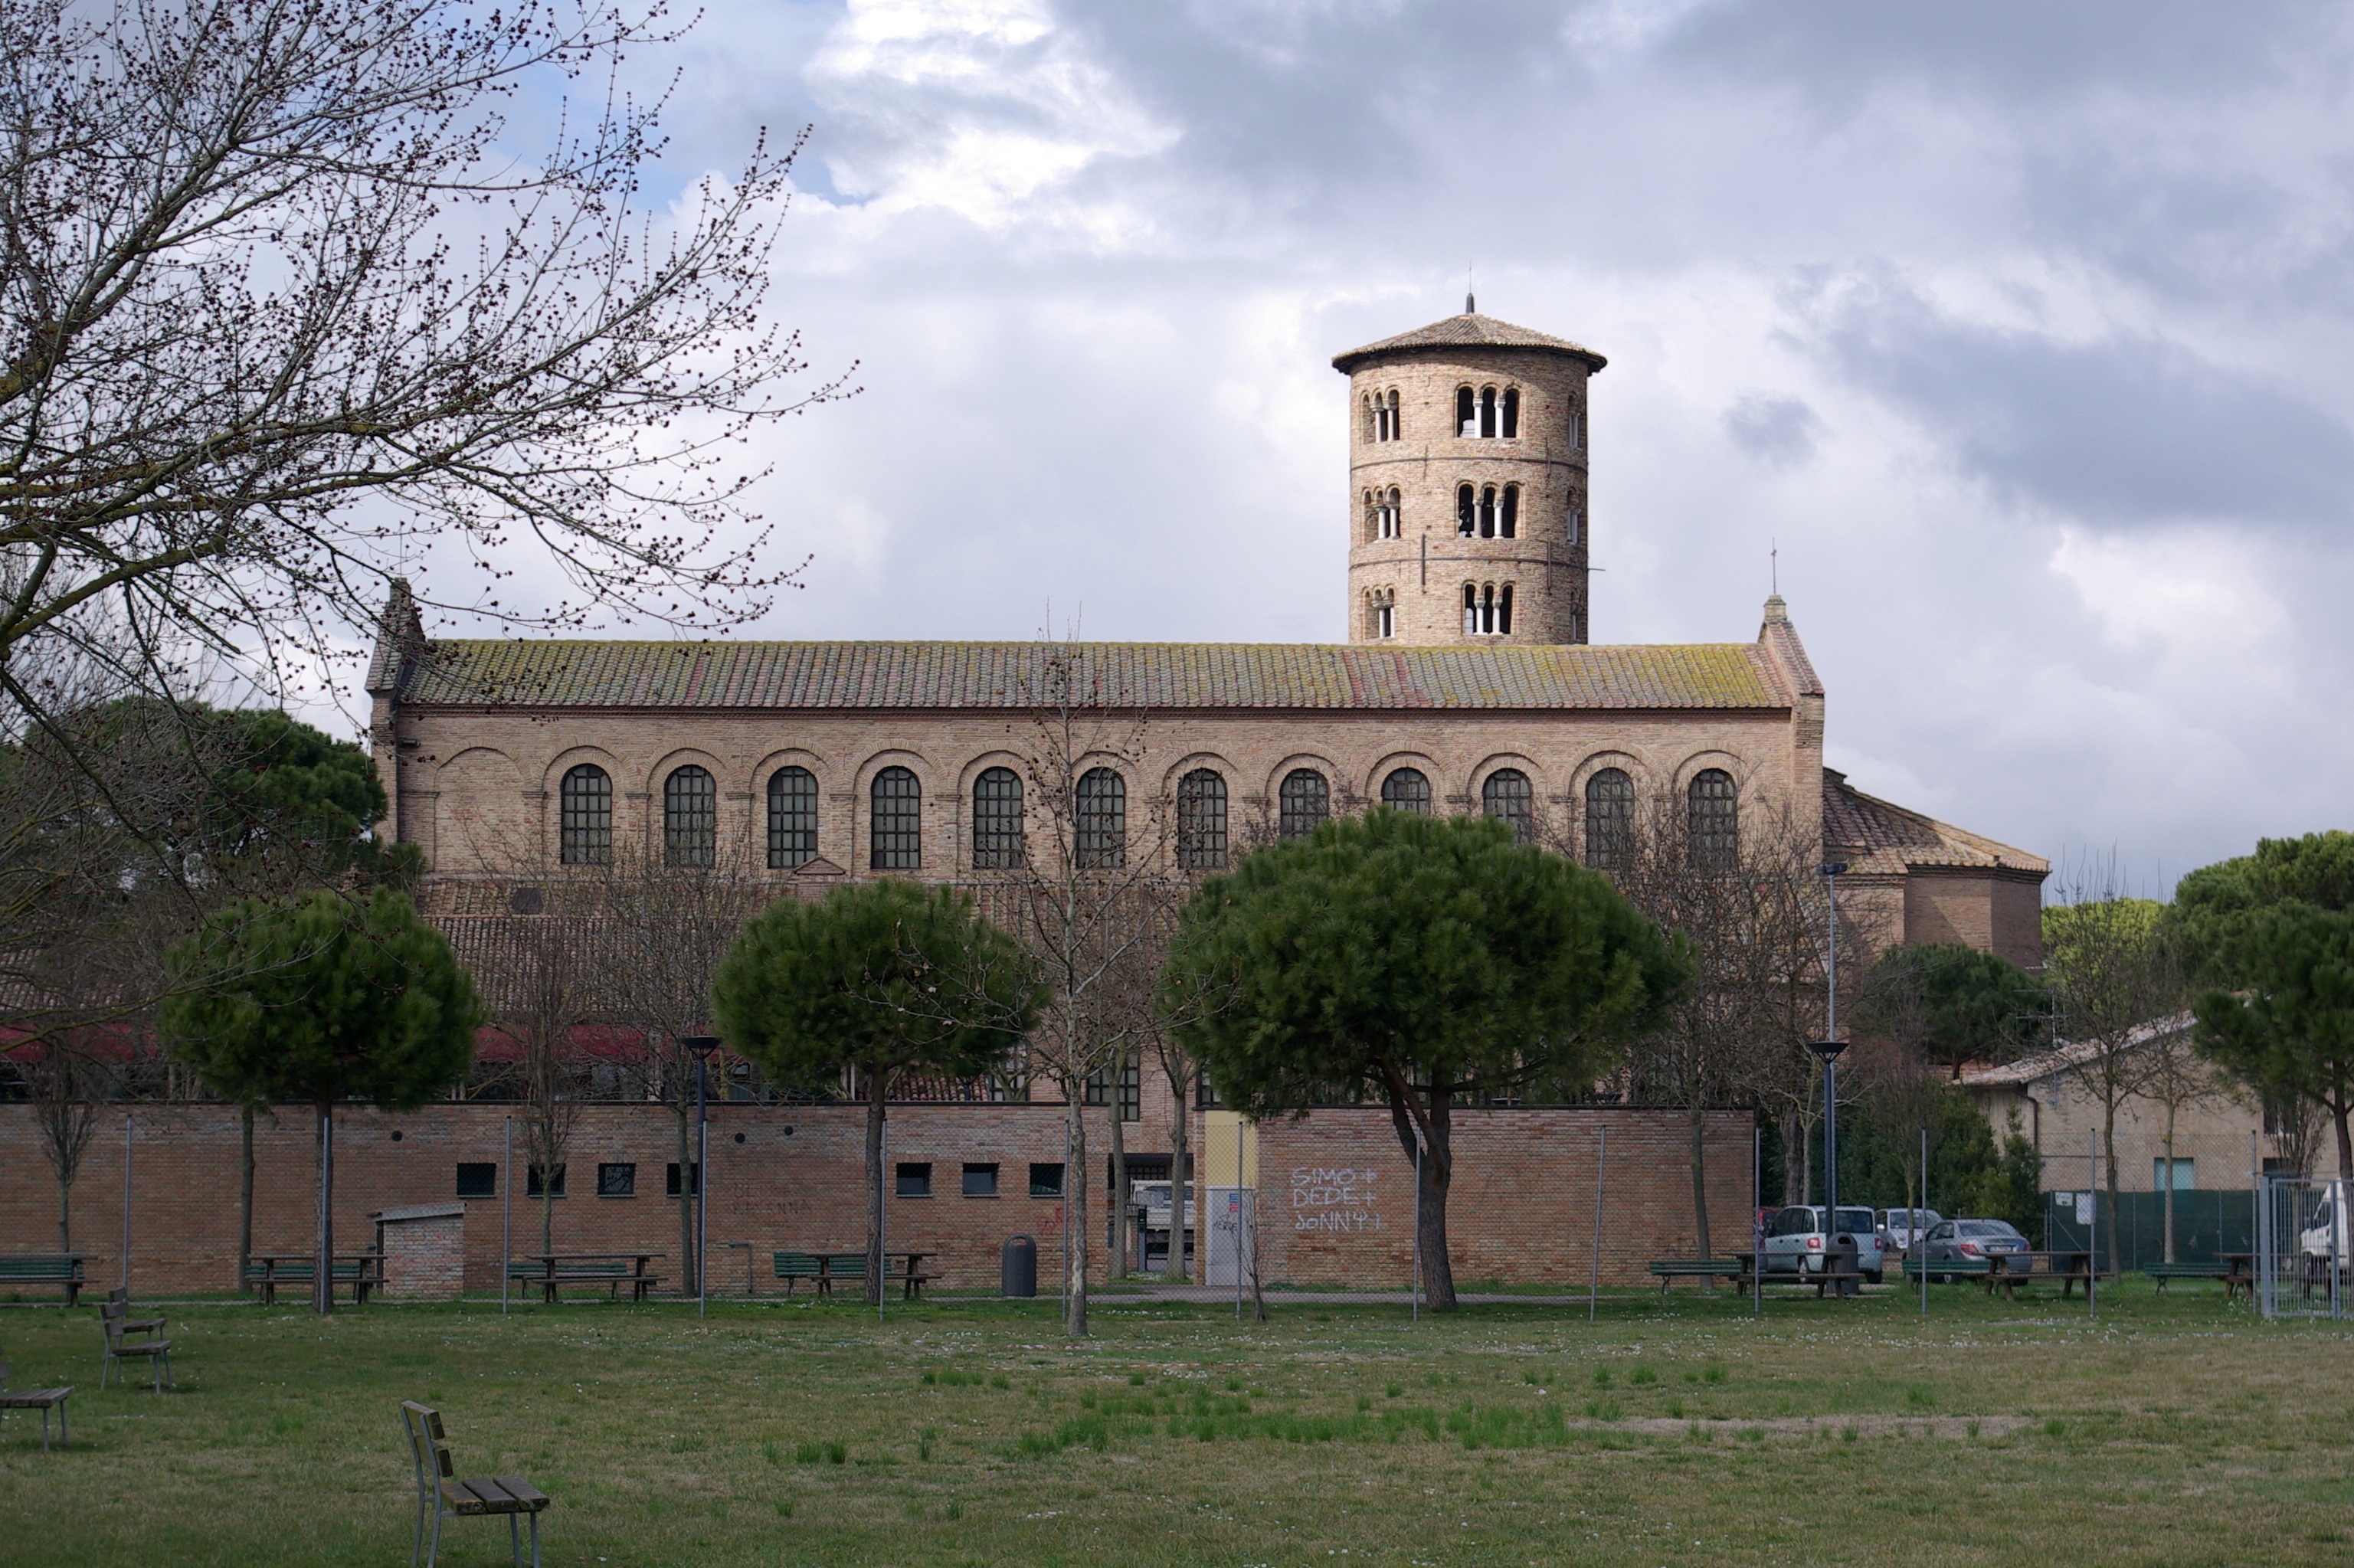 サンタポリナーレ・イン・クラッセ聖堂｜ラヴェンナの初期キリスト教建築物群｜世界遺産オンラインガイド